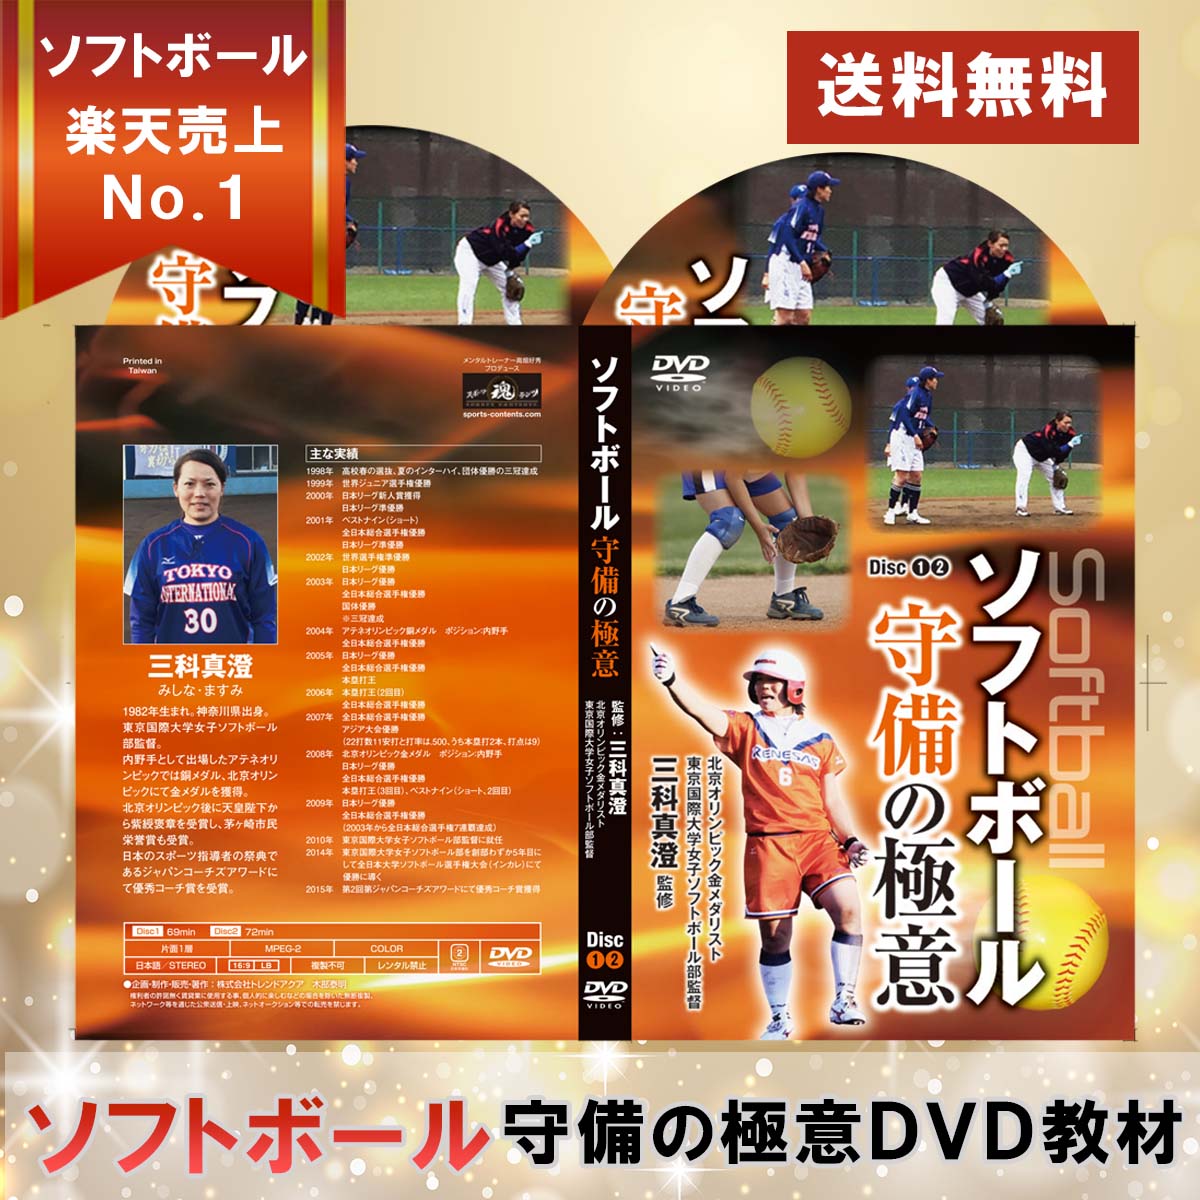 ソフトボール守備の極意DVD【オリンピック金メダリスト三科 